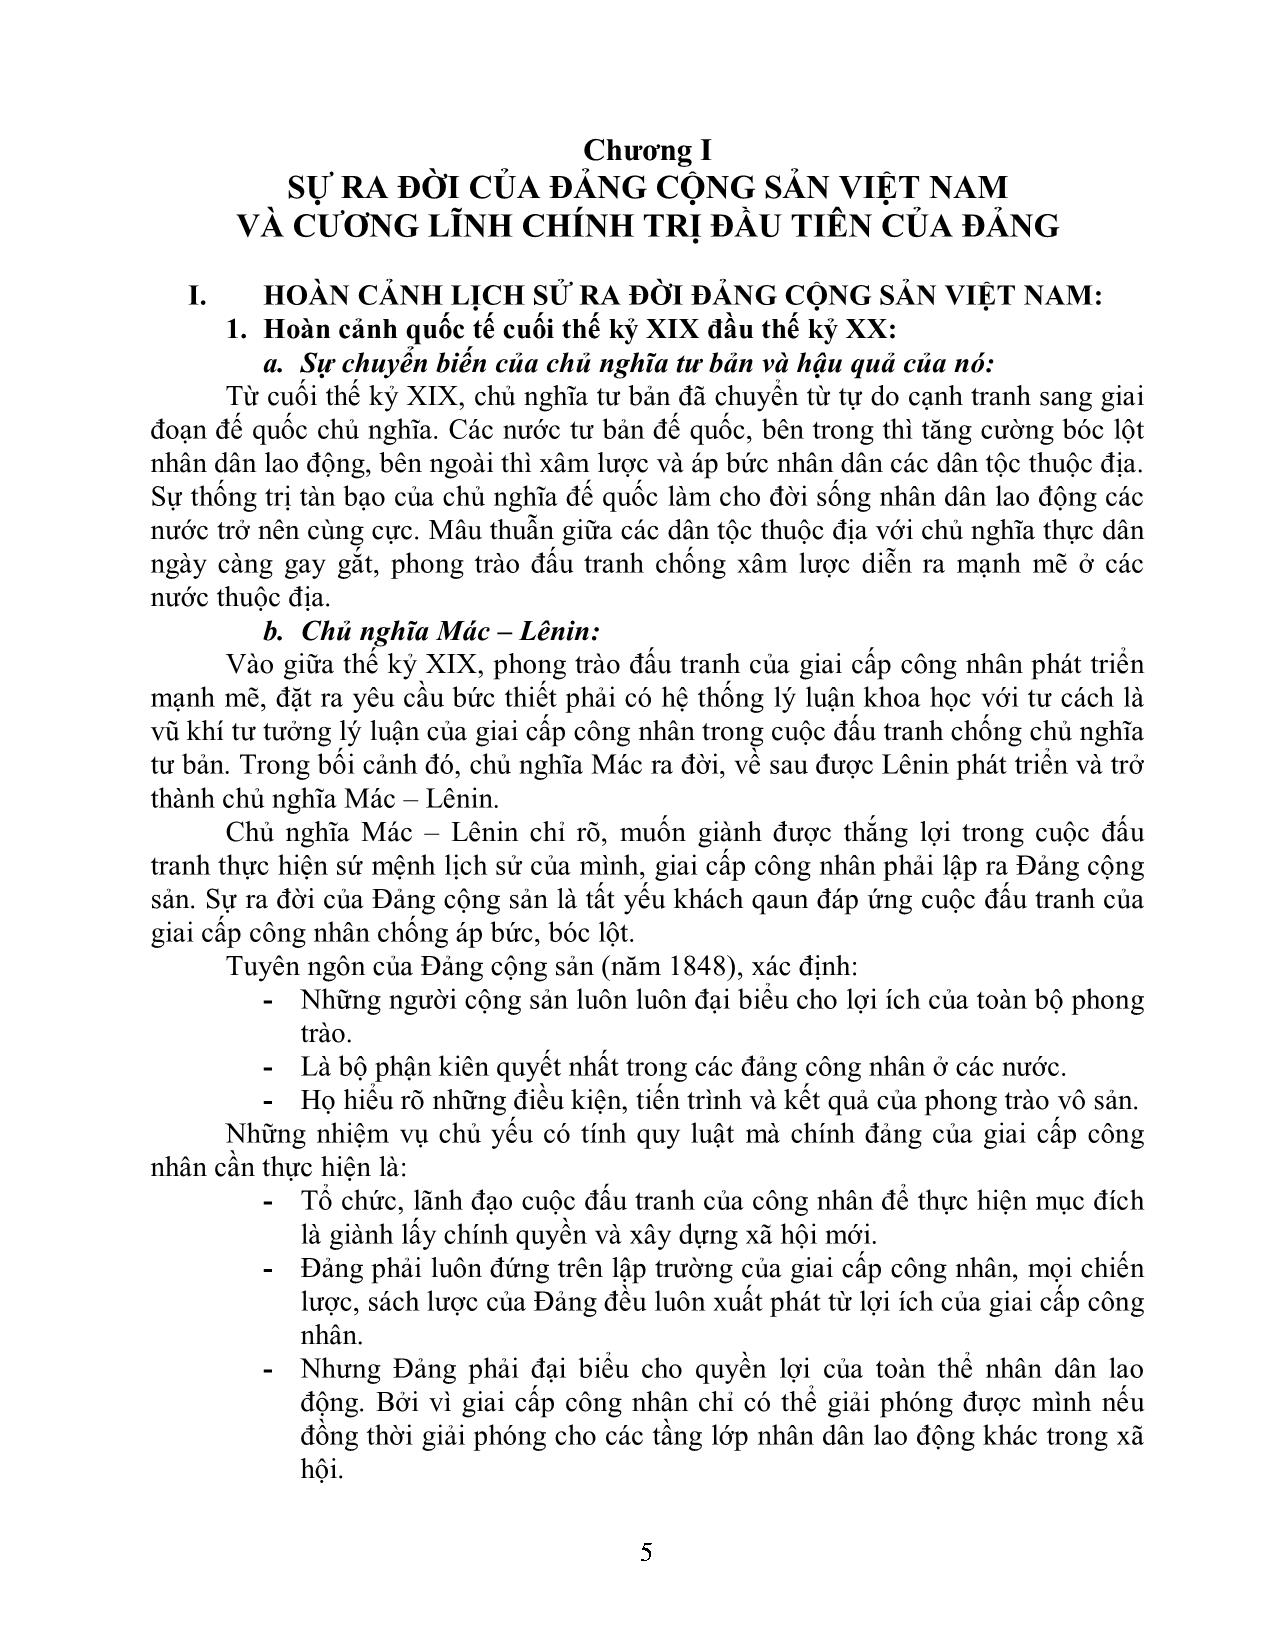 Đối tượng, nhiệm vụ và phương pháp nghiên cứu môn đường lối cách mạng của đảng cộng sản Việt Nam trang 5